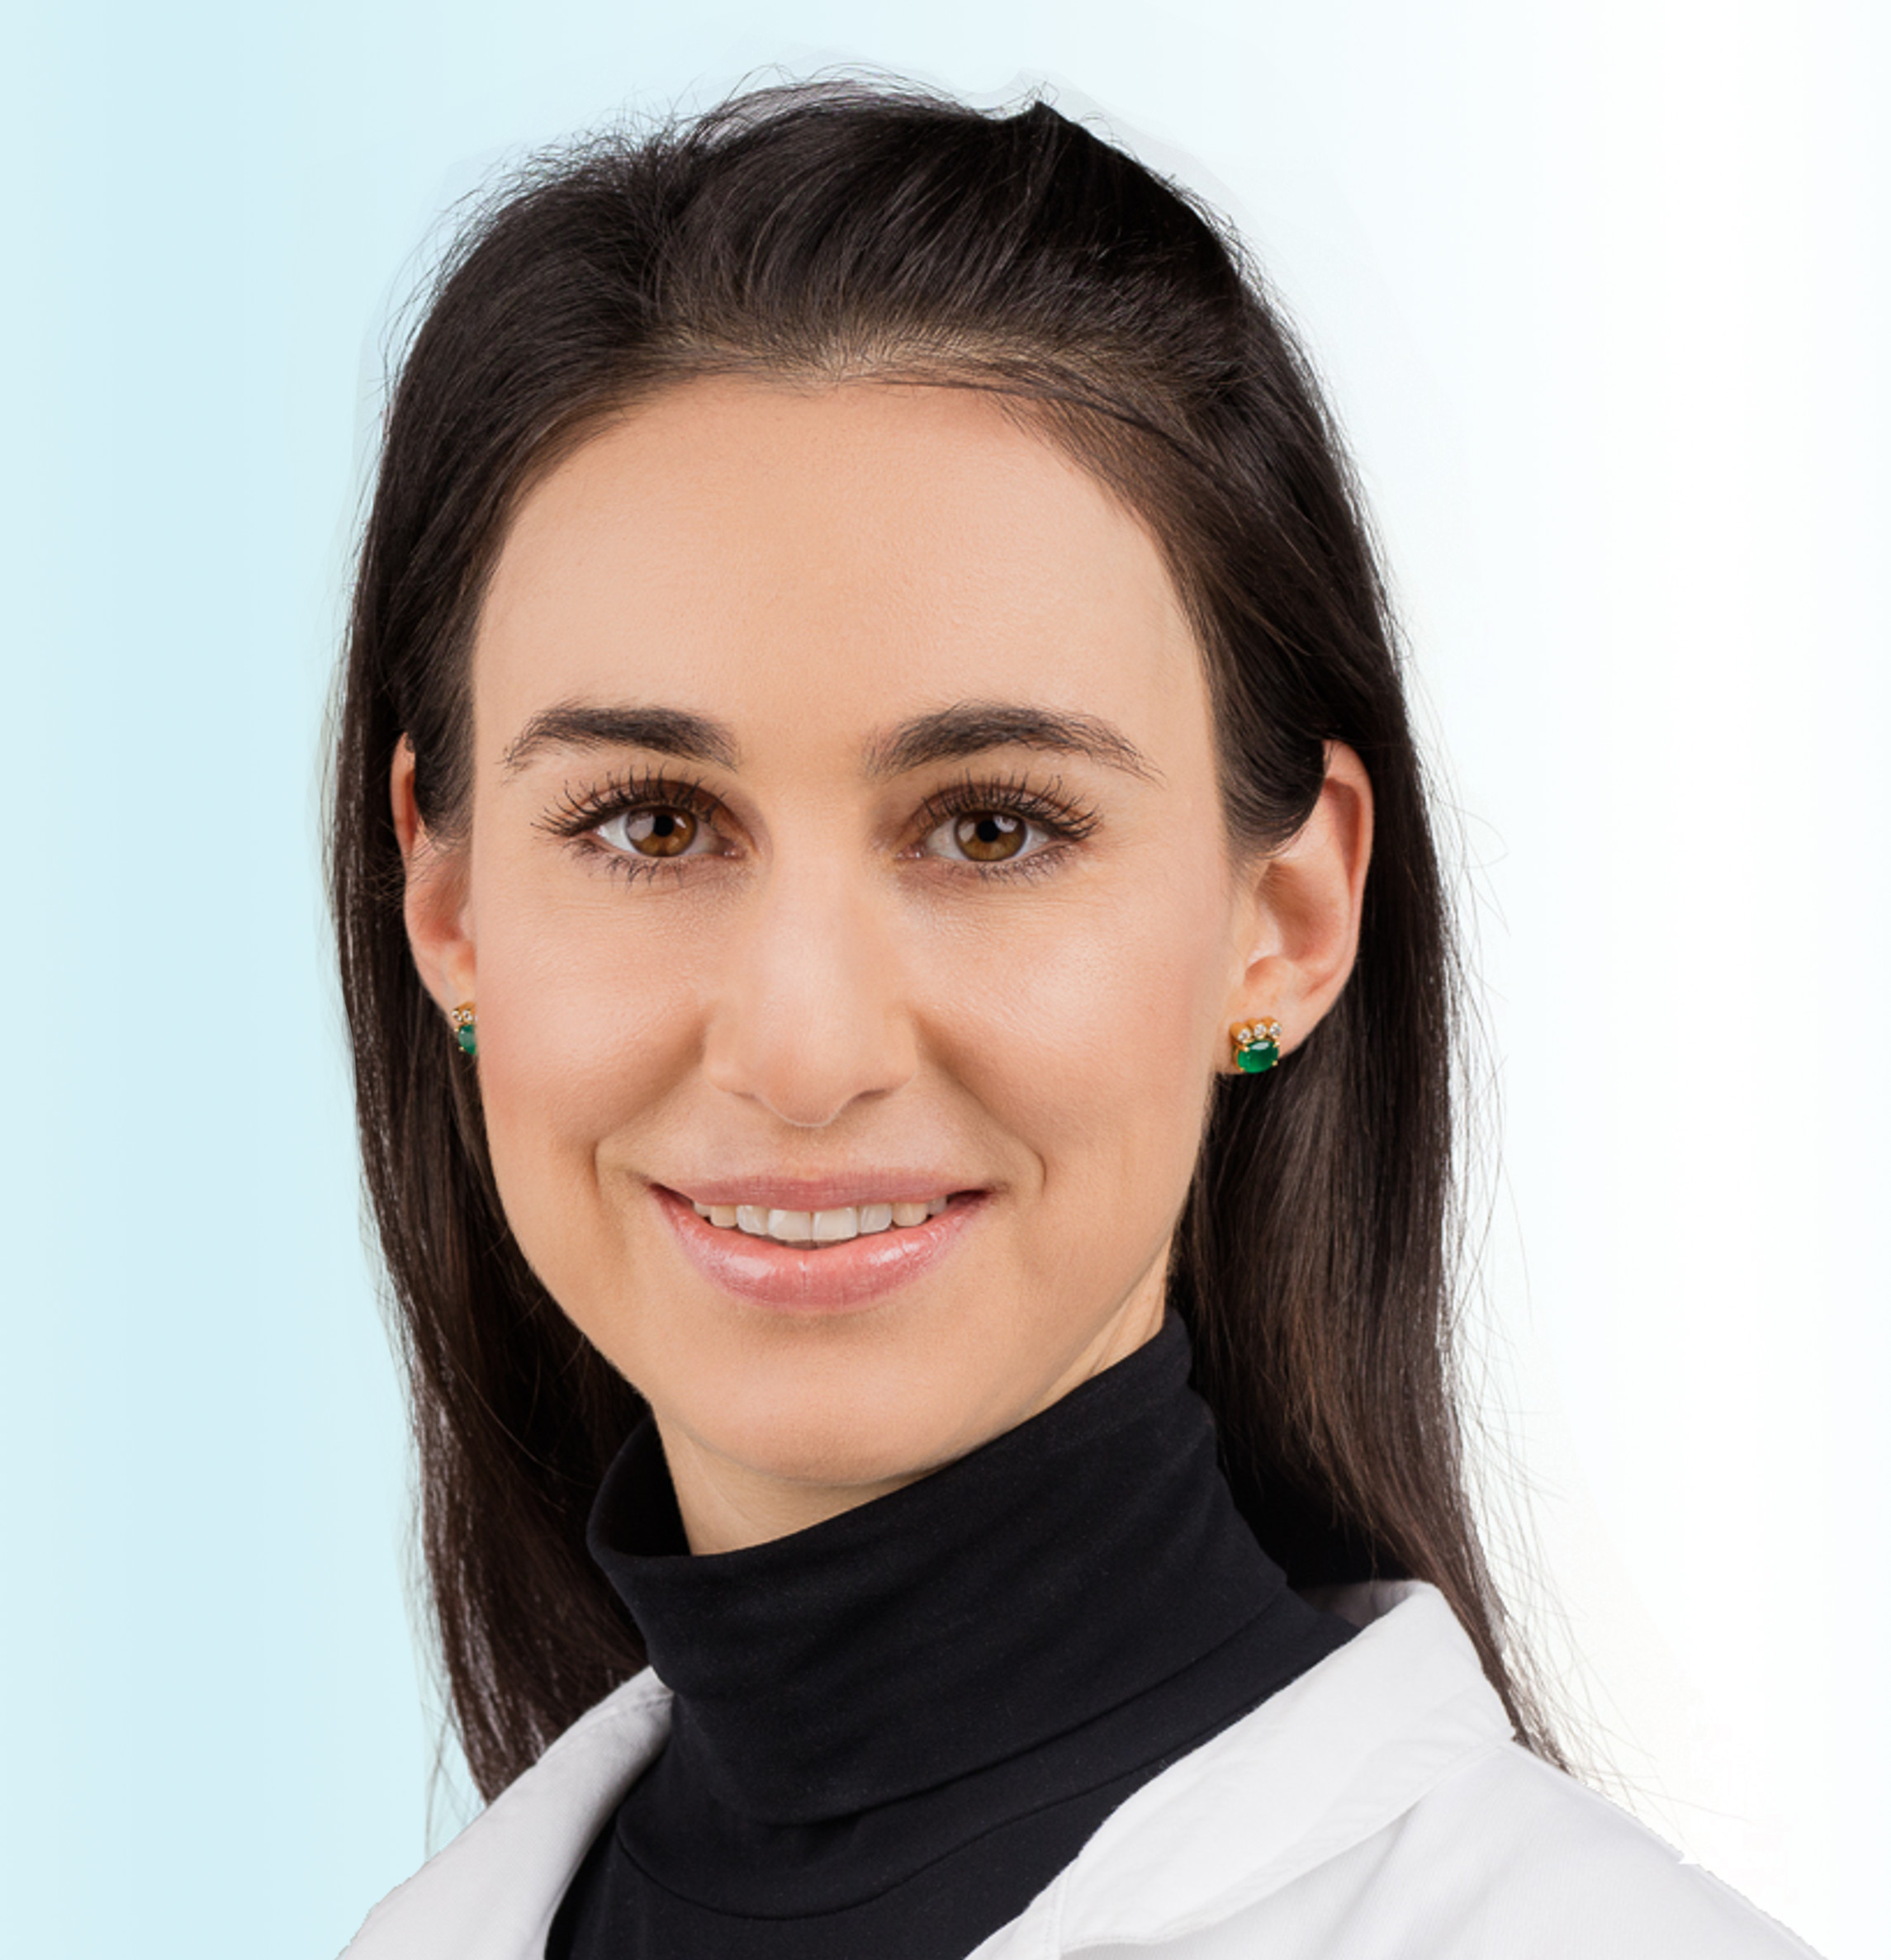 Dermatologist, Dr. med. Valentina Bänninger